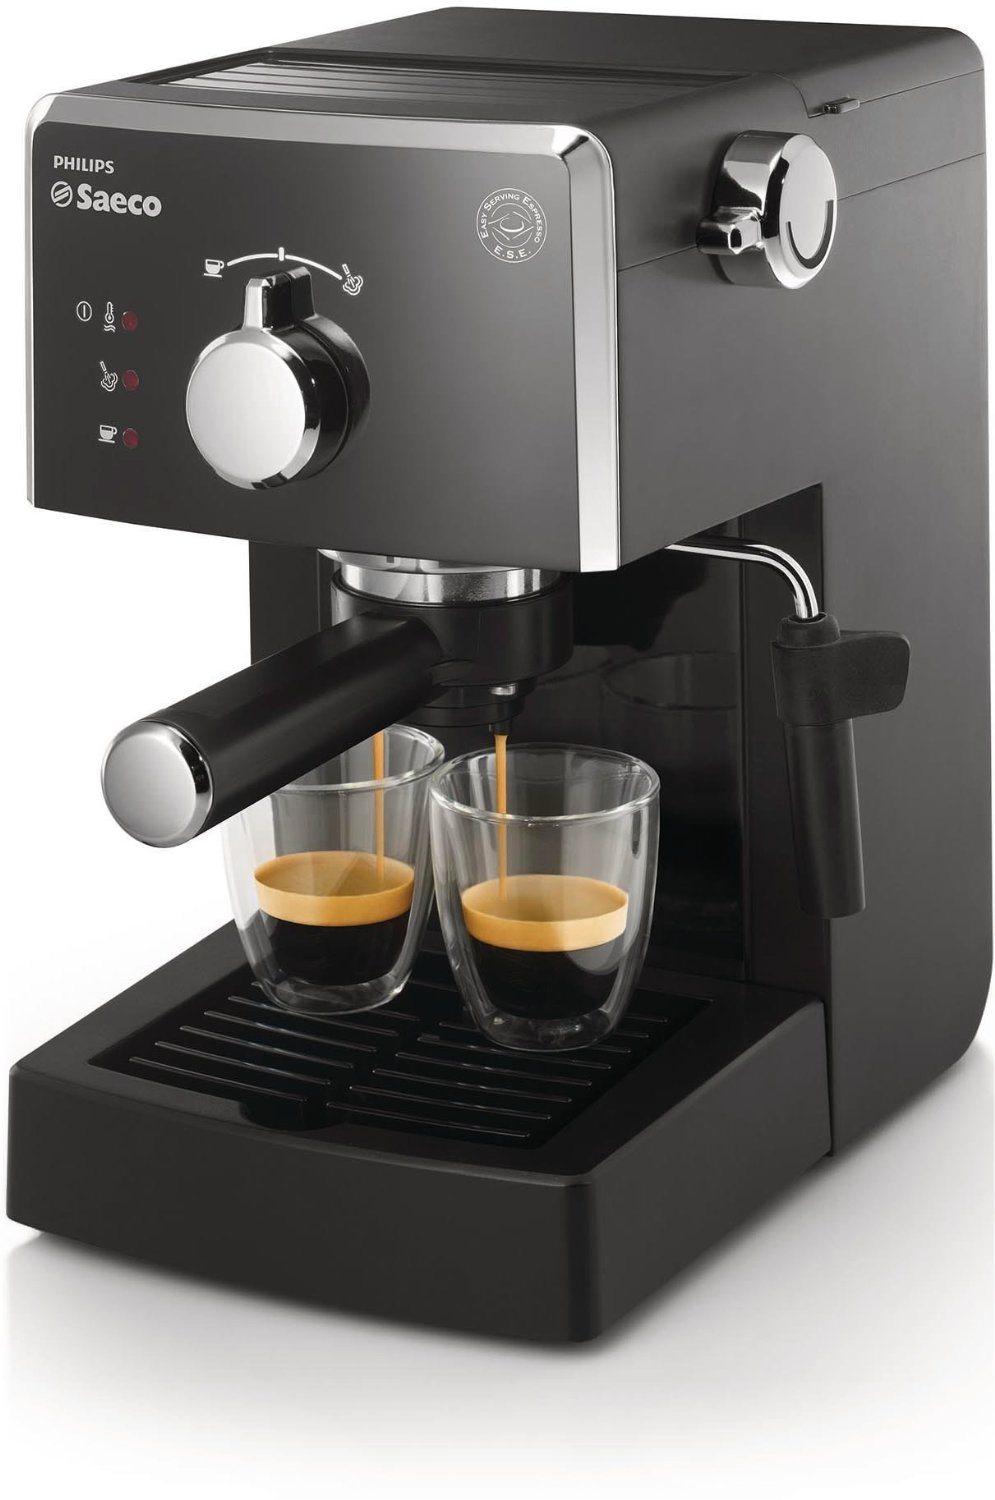 Philips HD8423/11 - Cafetera espresso manual Saeco Poemia para café molido y monodosis ESE, salida de café para una o dos tazas